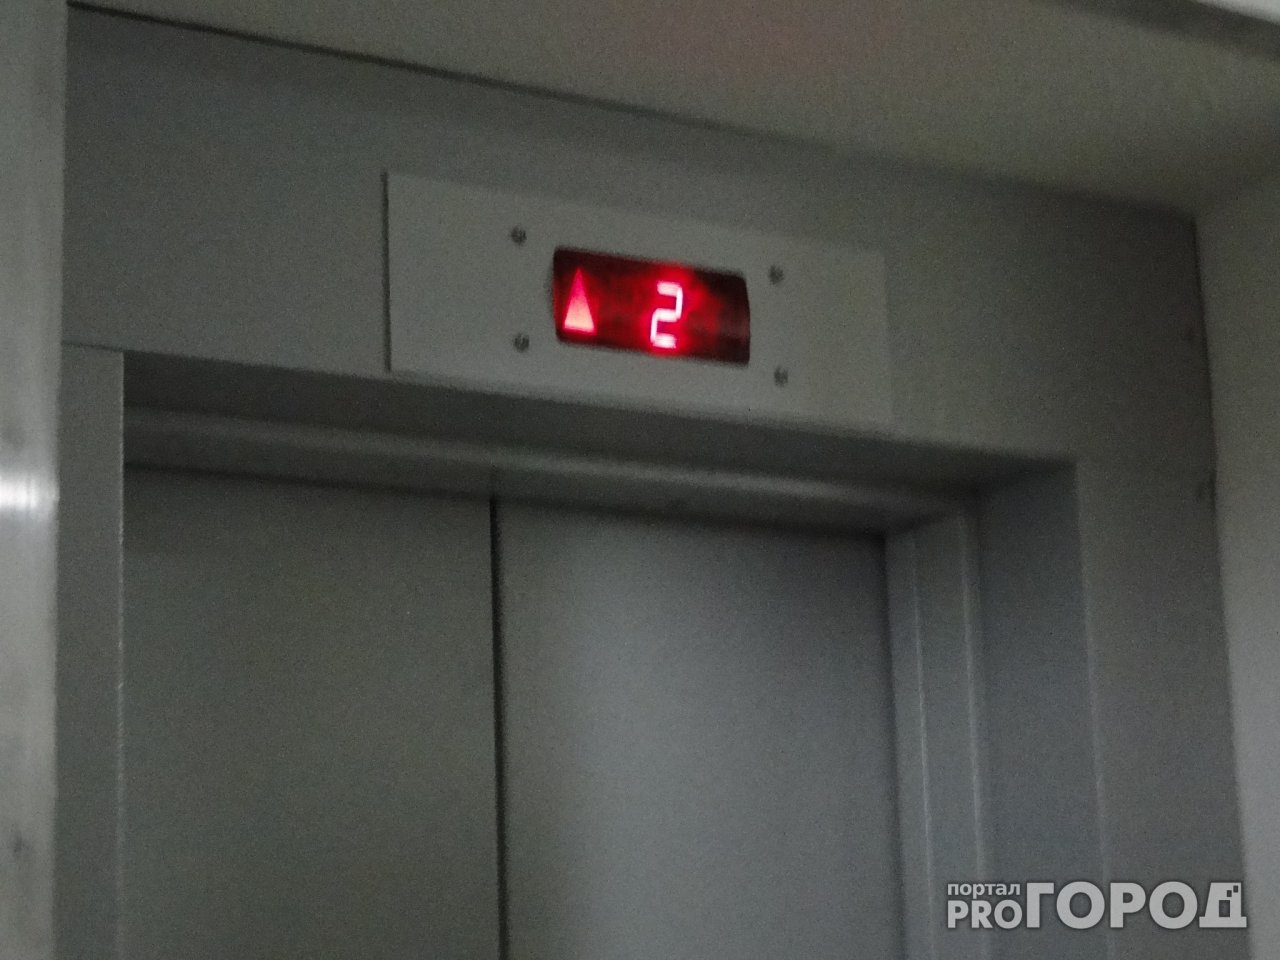 "Ежедневно в нём застревают люди": рязанец пожаловался на ужасающее состояние лифта